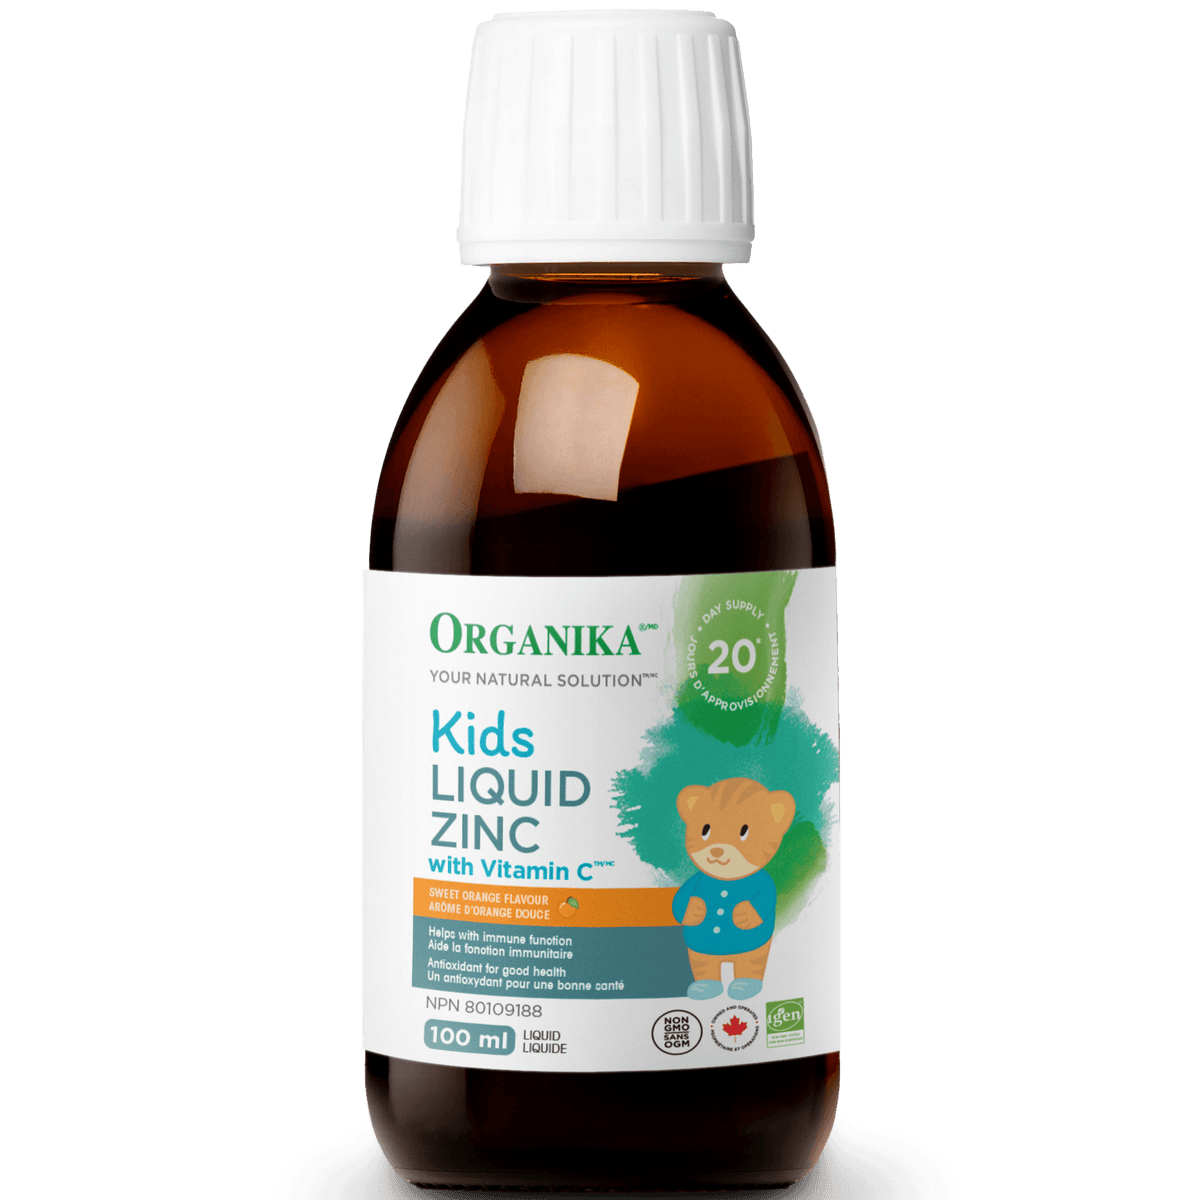 Organika Kids Liquid Zinc 100ml*Limit of 1 per order* Supplements - Kids at Village Vitamin Store